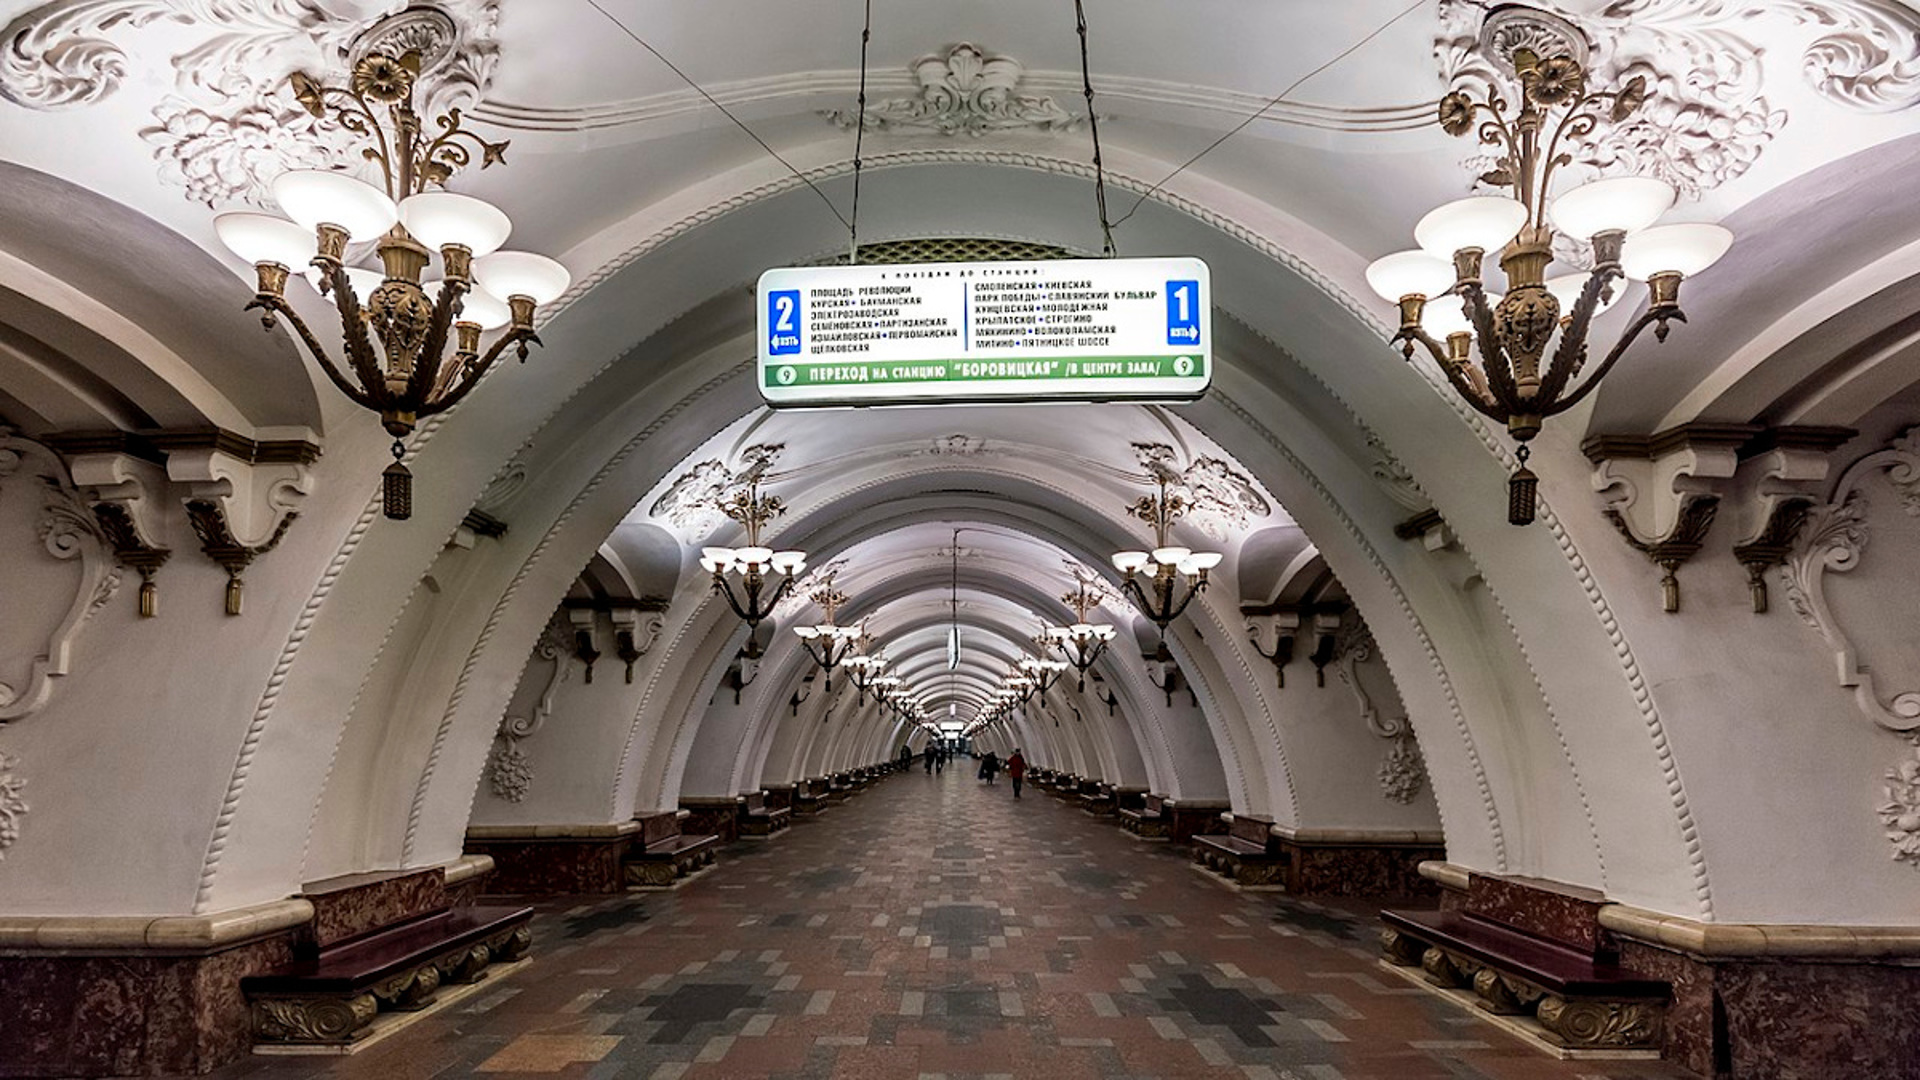 Арбатско покровская линия в метро